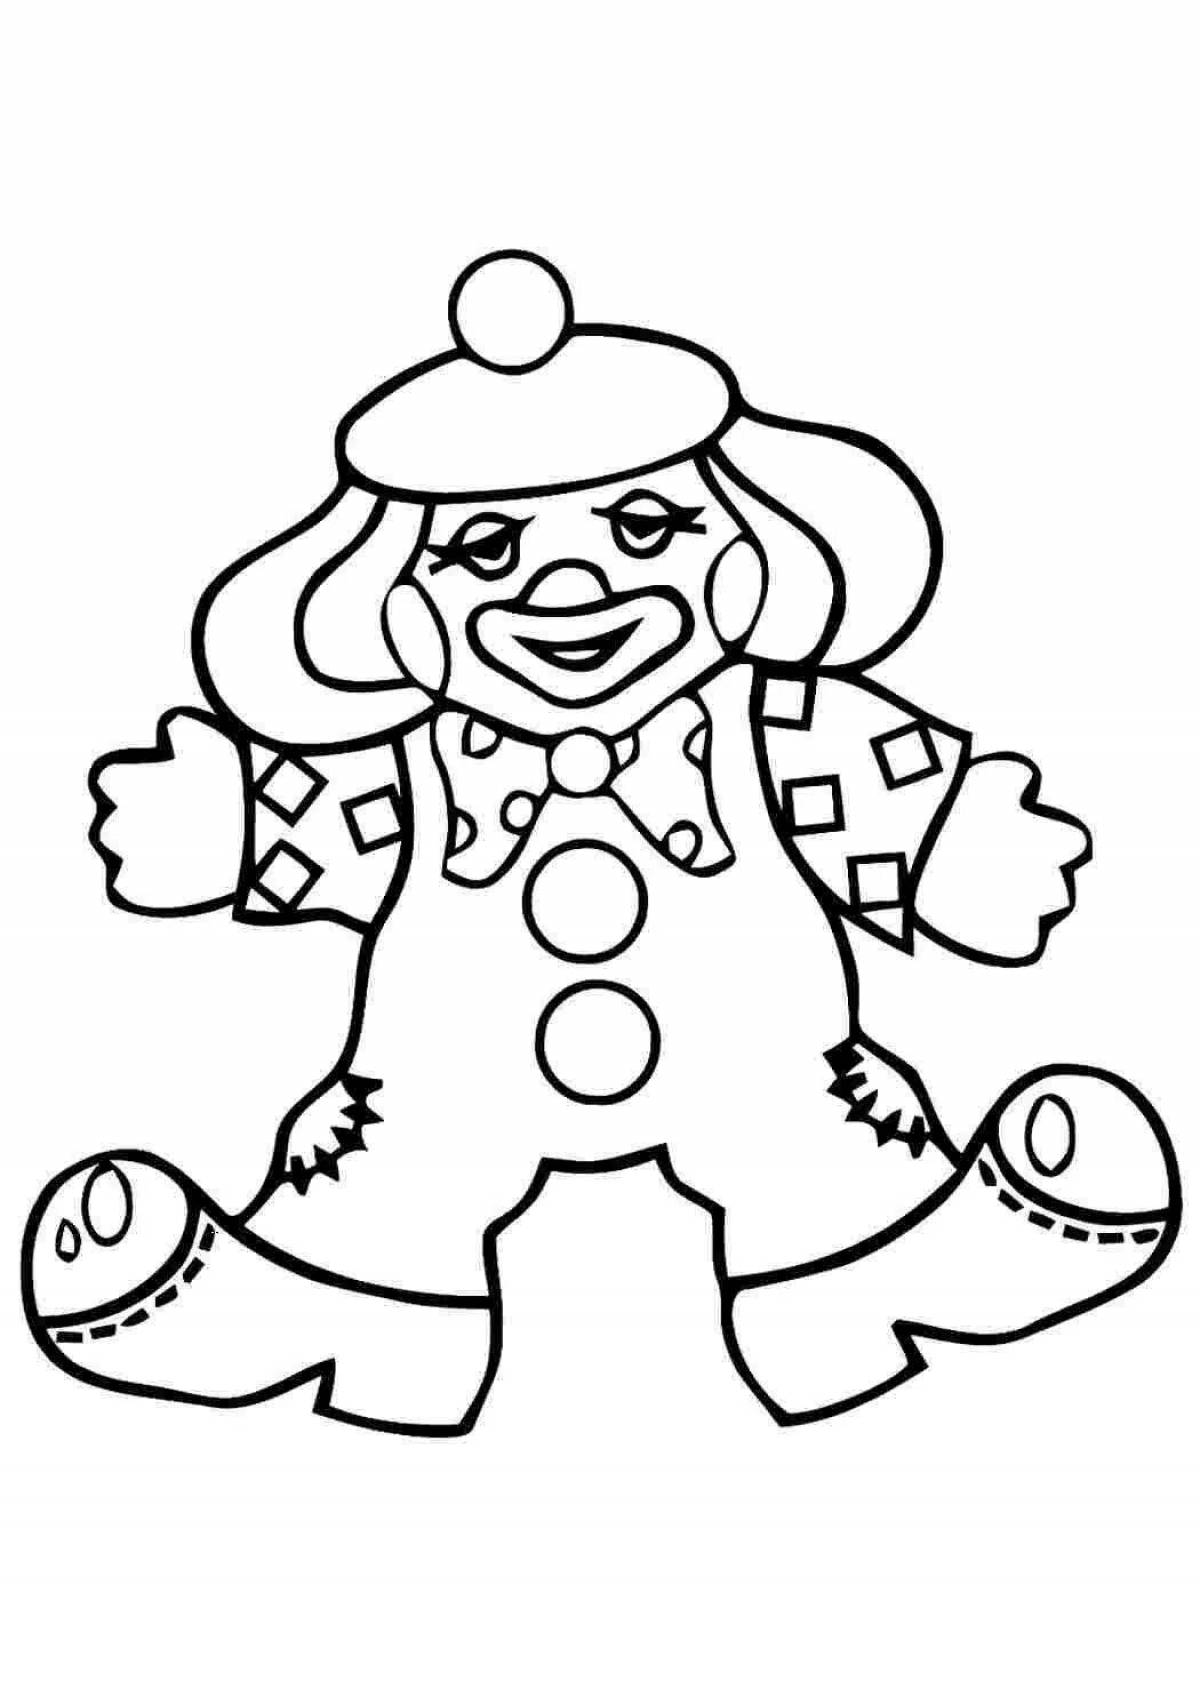 Раскраска сверкающий клоун для детей